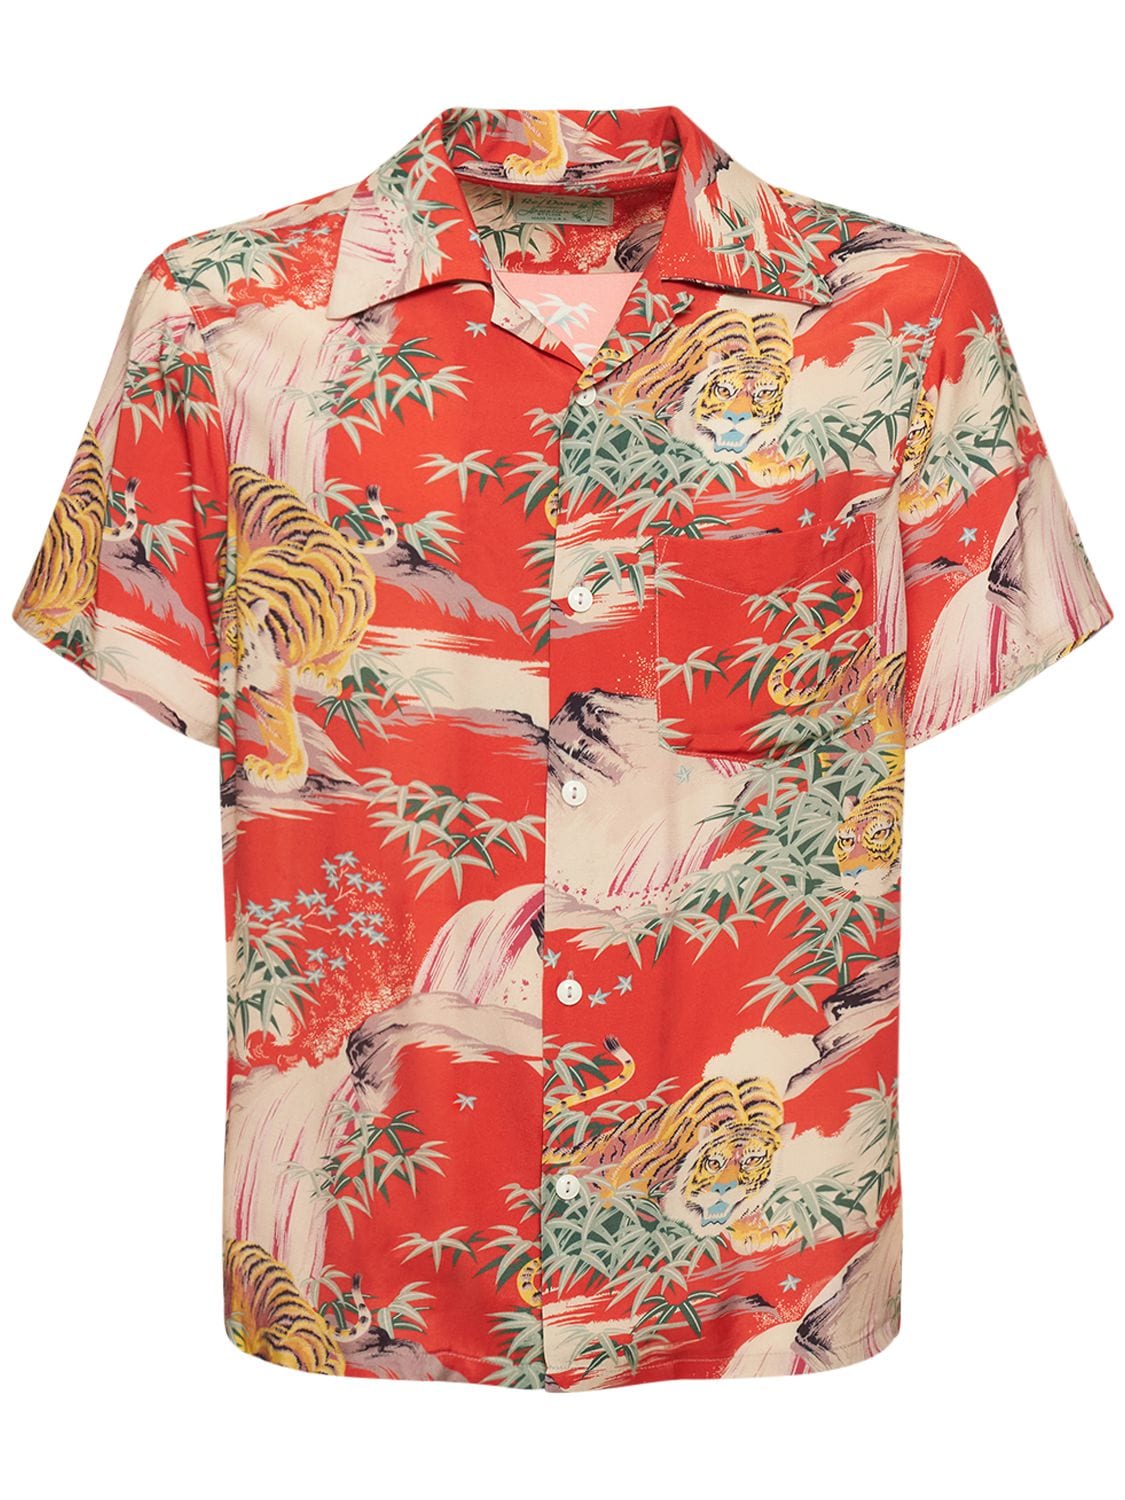 Tiger Surf Print Viscose S/s Shirt – MEN > CLOTHING > SHIRTS